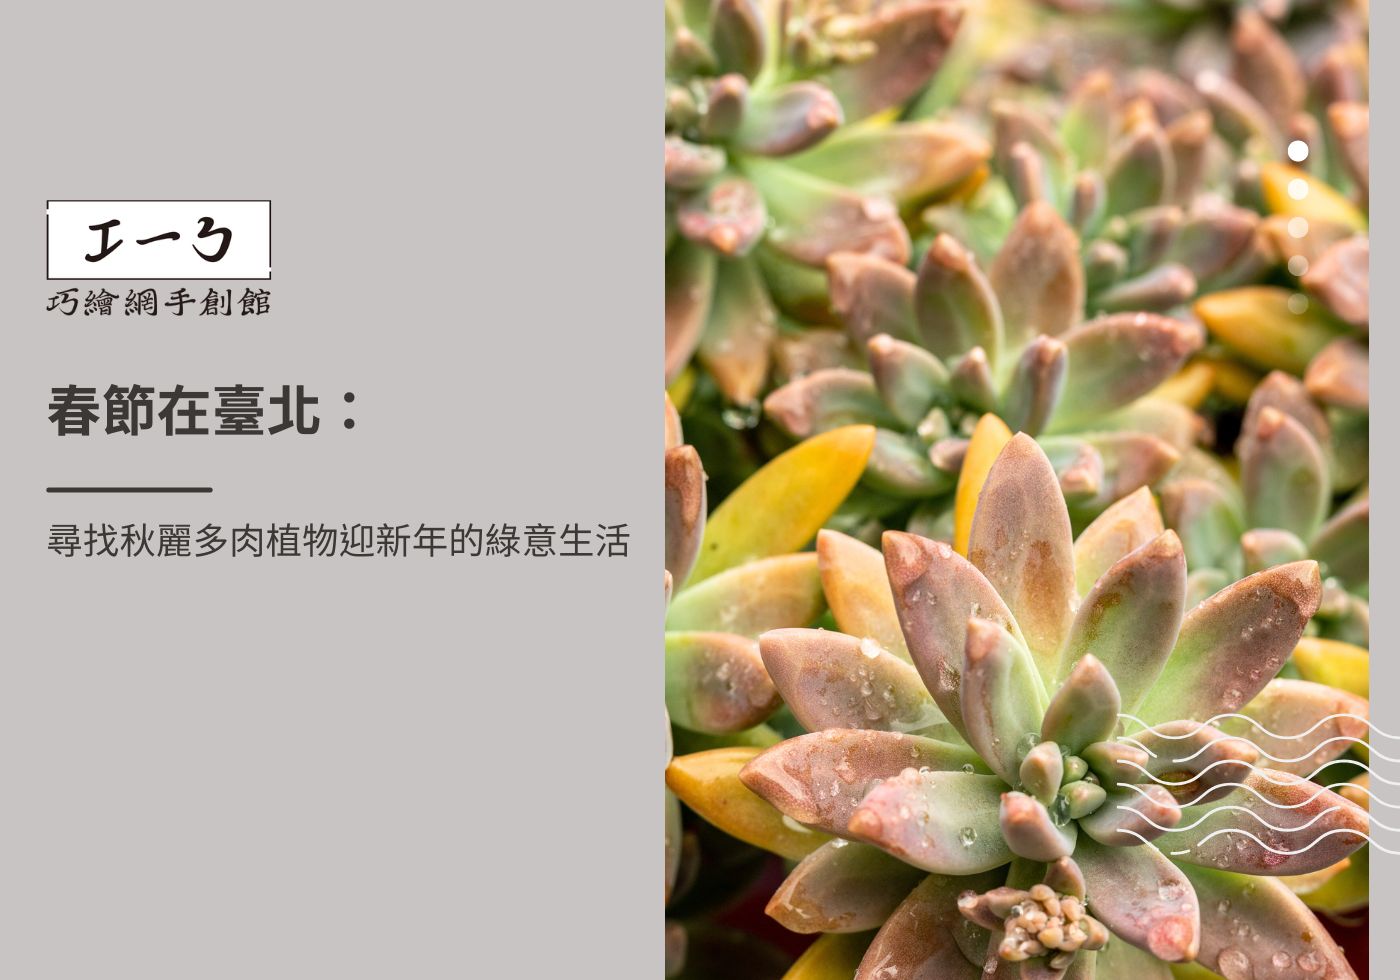 閱讀更多文章 春節在臺北：尋找秋麗多肉植物迎新年的綠意生活